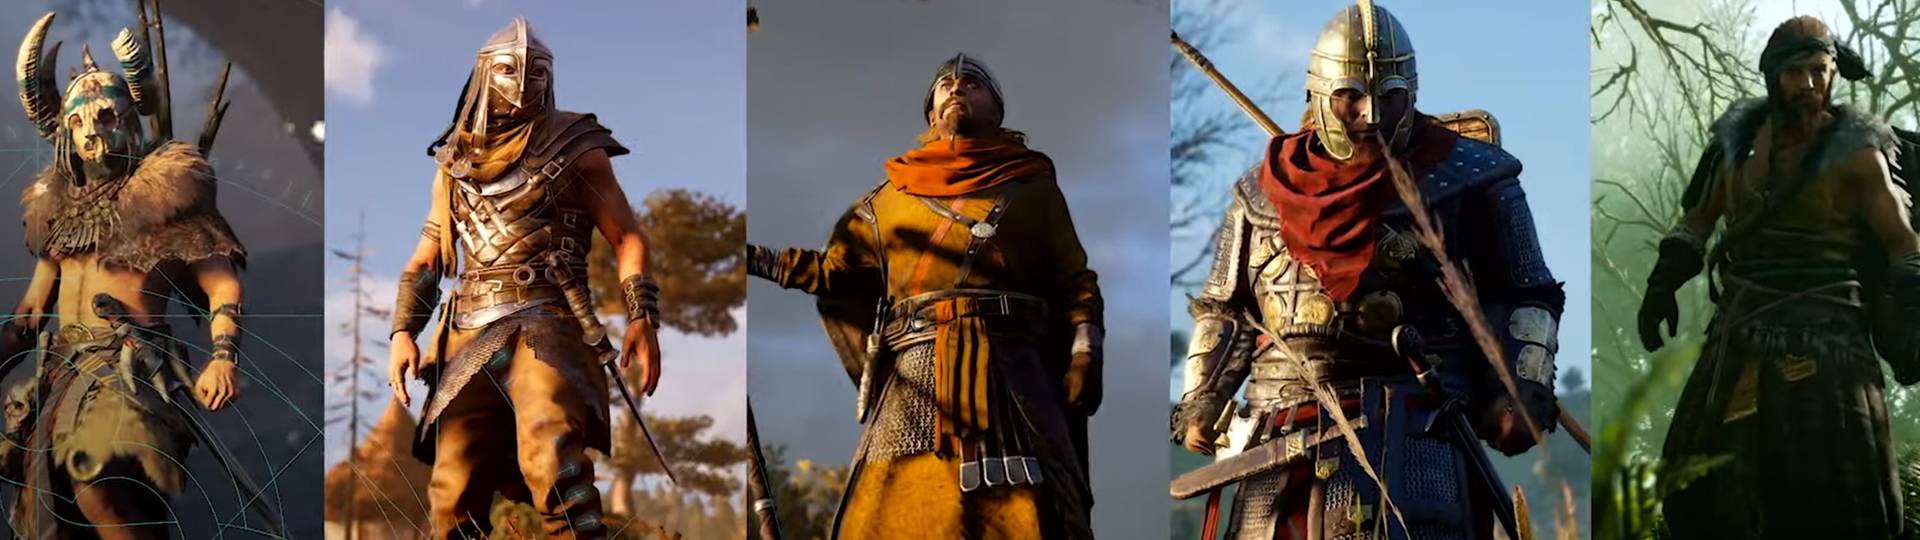 První oficiální gameplay záběry z Assassin’s Creed Valhalla | Videa